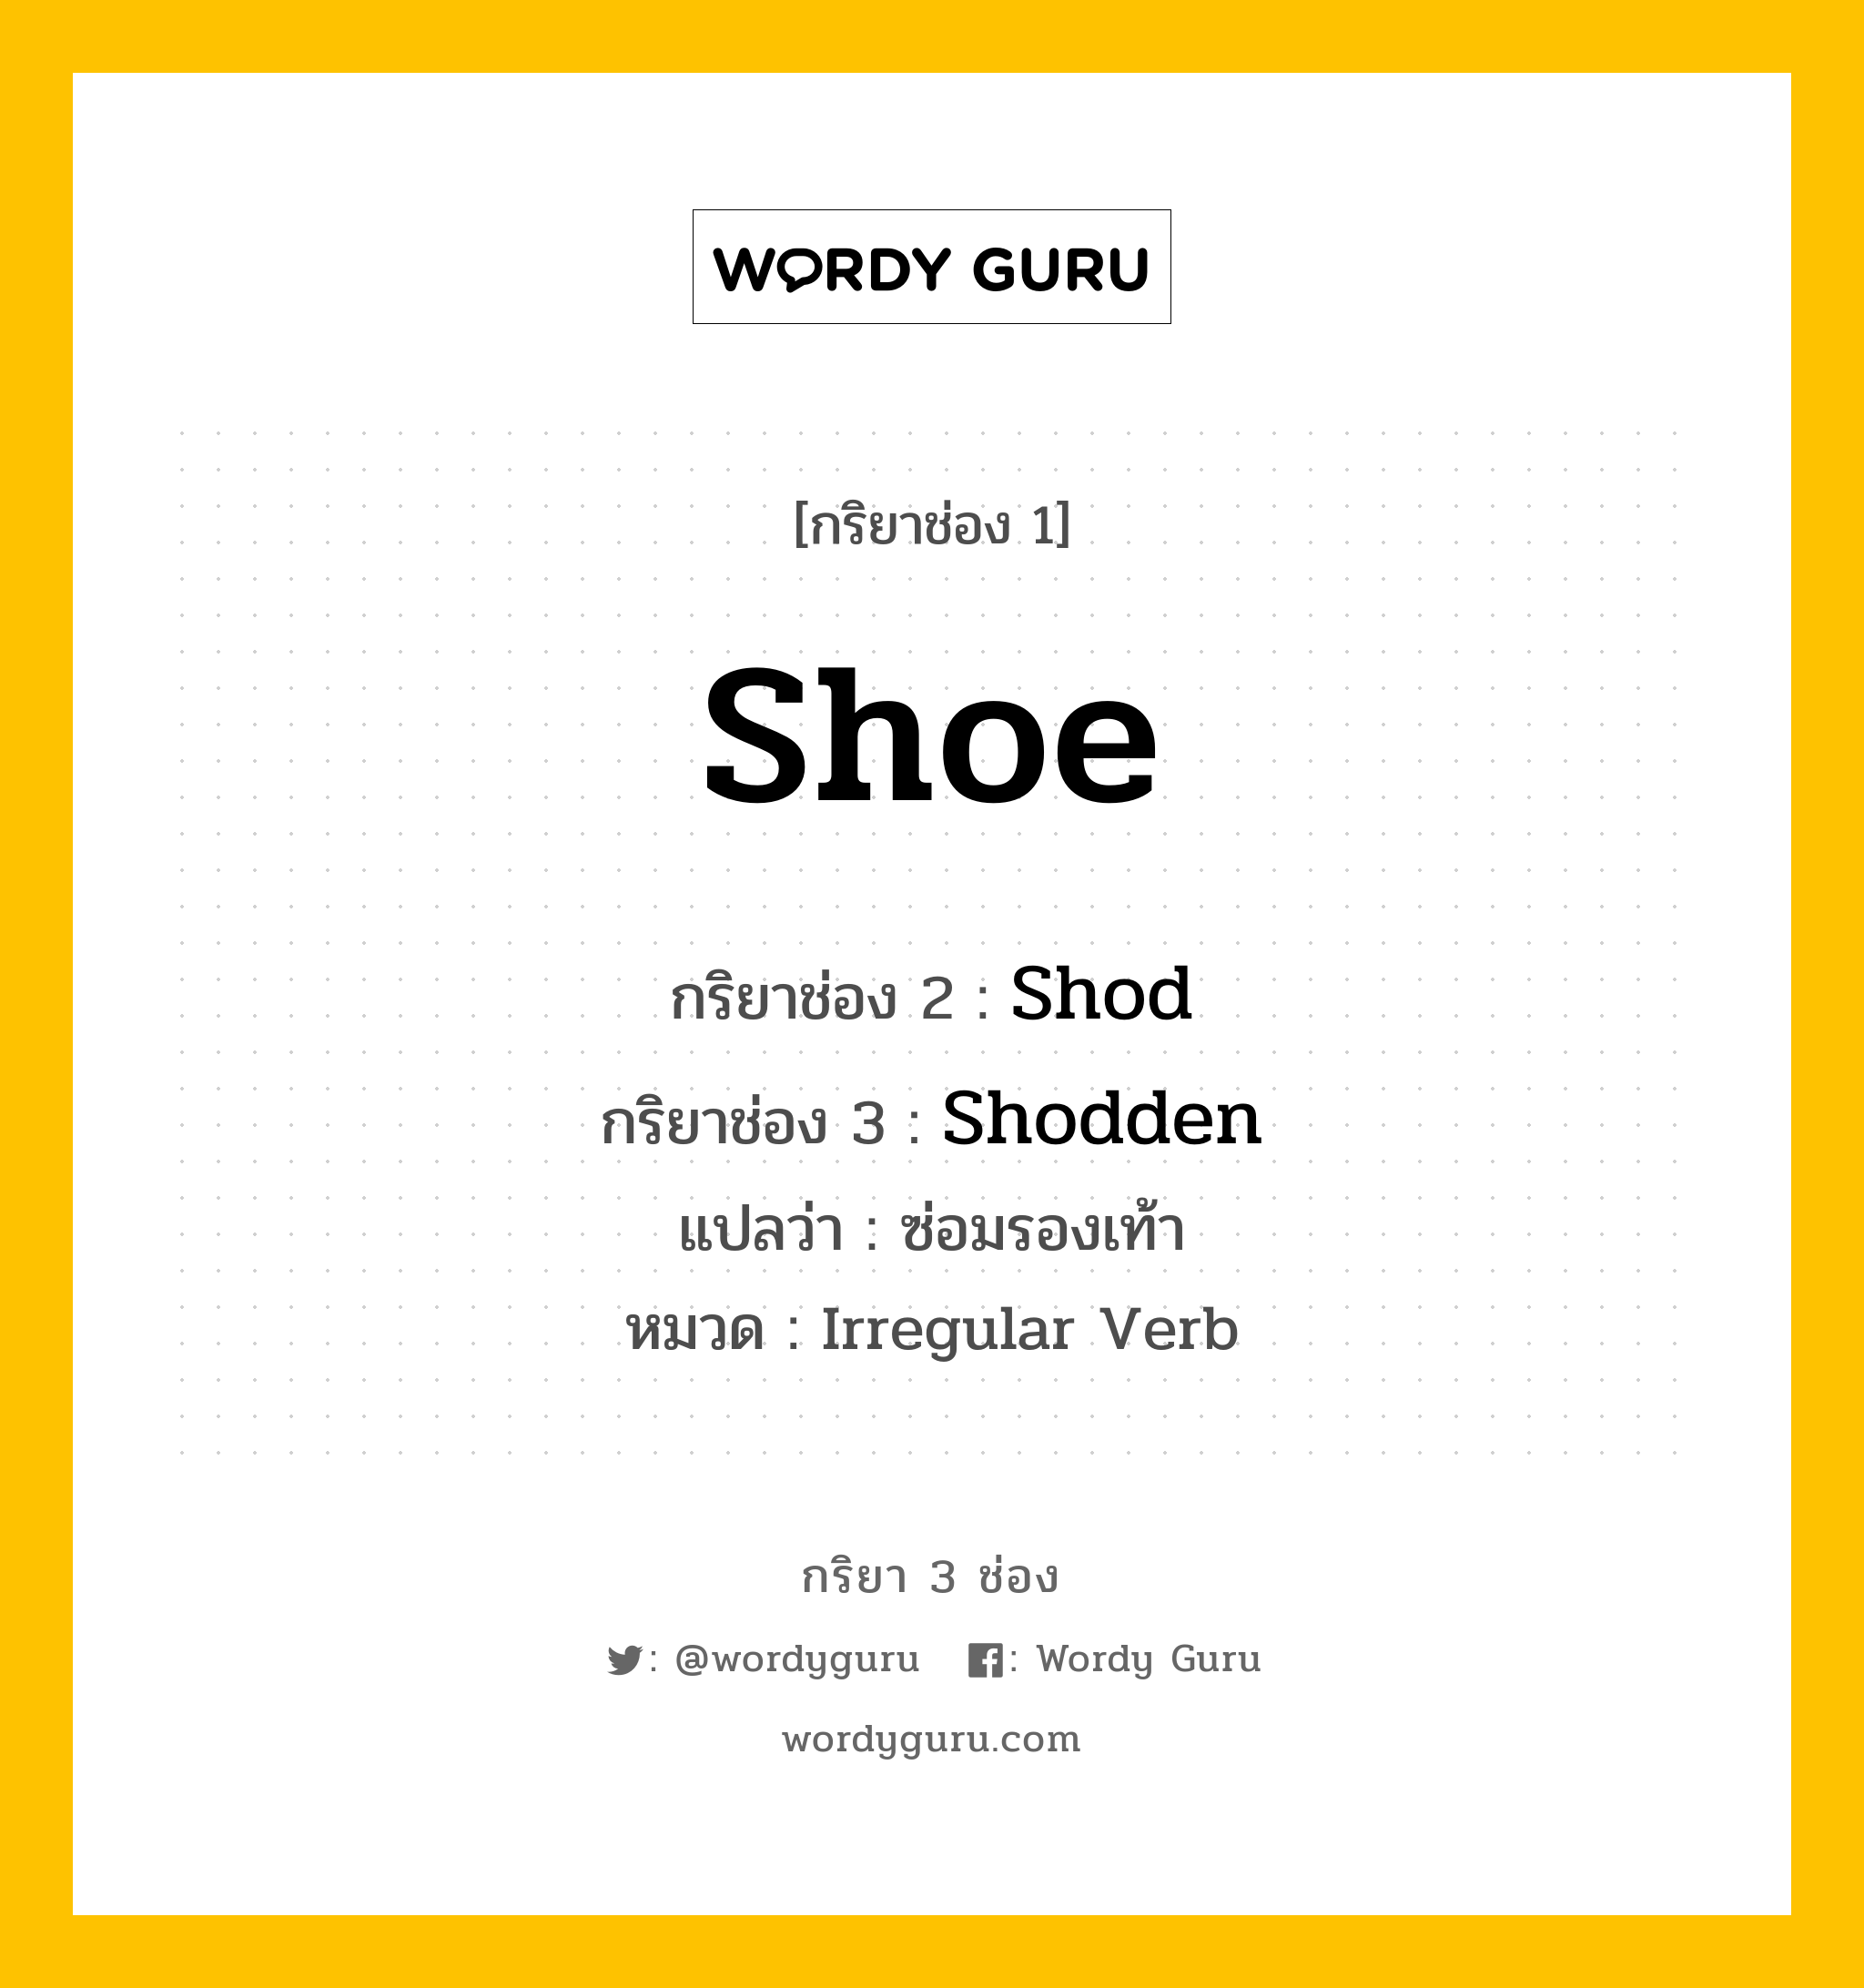 กริยา 3 ช่อง: Shoe ช่อง 2 Shoe ช่อง 3 คืออะไร, กริยาช่อง 1 Shoe กริยาช่อง 2 Shod กริยาช่อง 3 Shodden แปลว่า ซ่อมรองเท้า หมวด Irregular Verb มีหลายแบบ y หมวด Irregular Verb